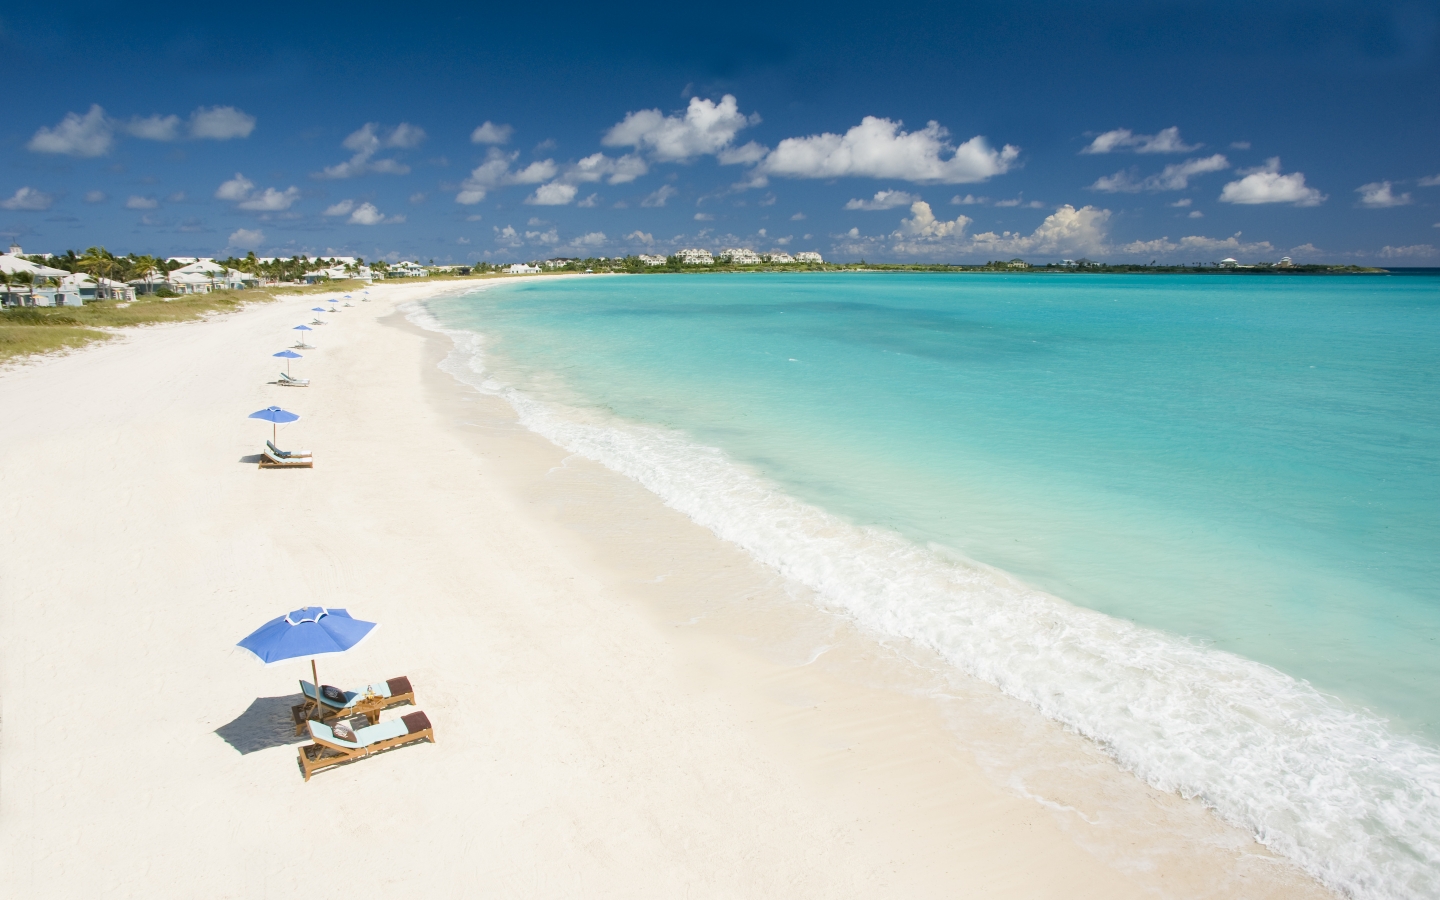 Caribbean Beach for 1440 x 900 widescreen resolution